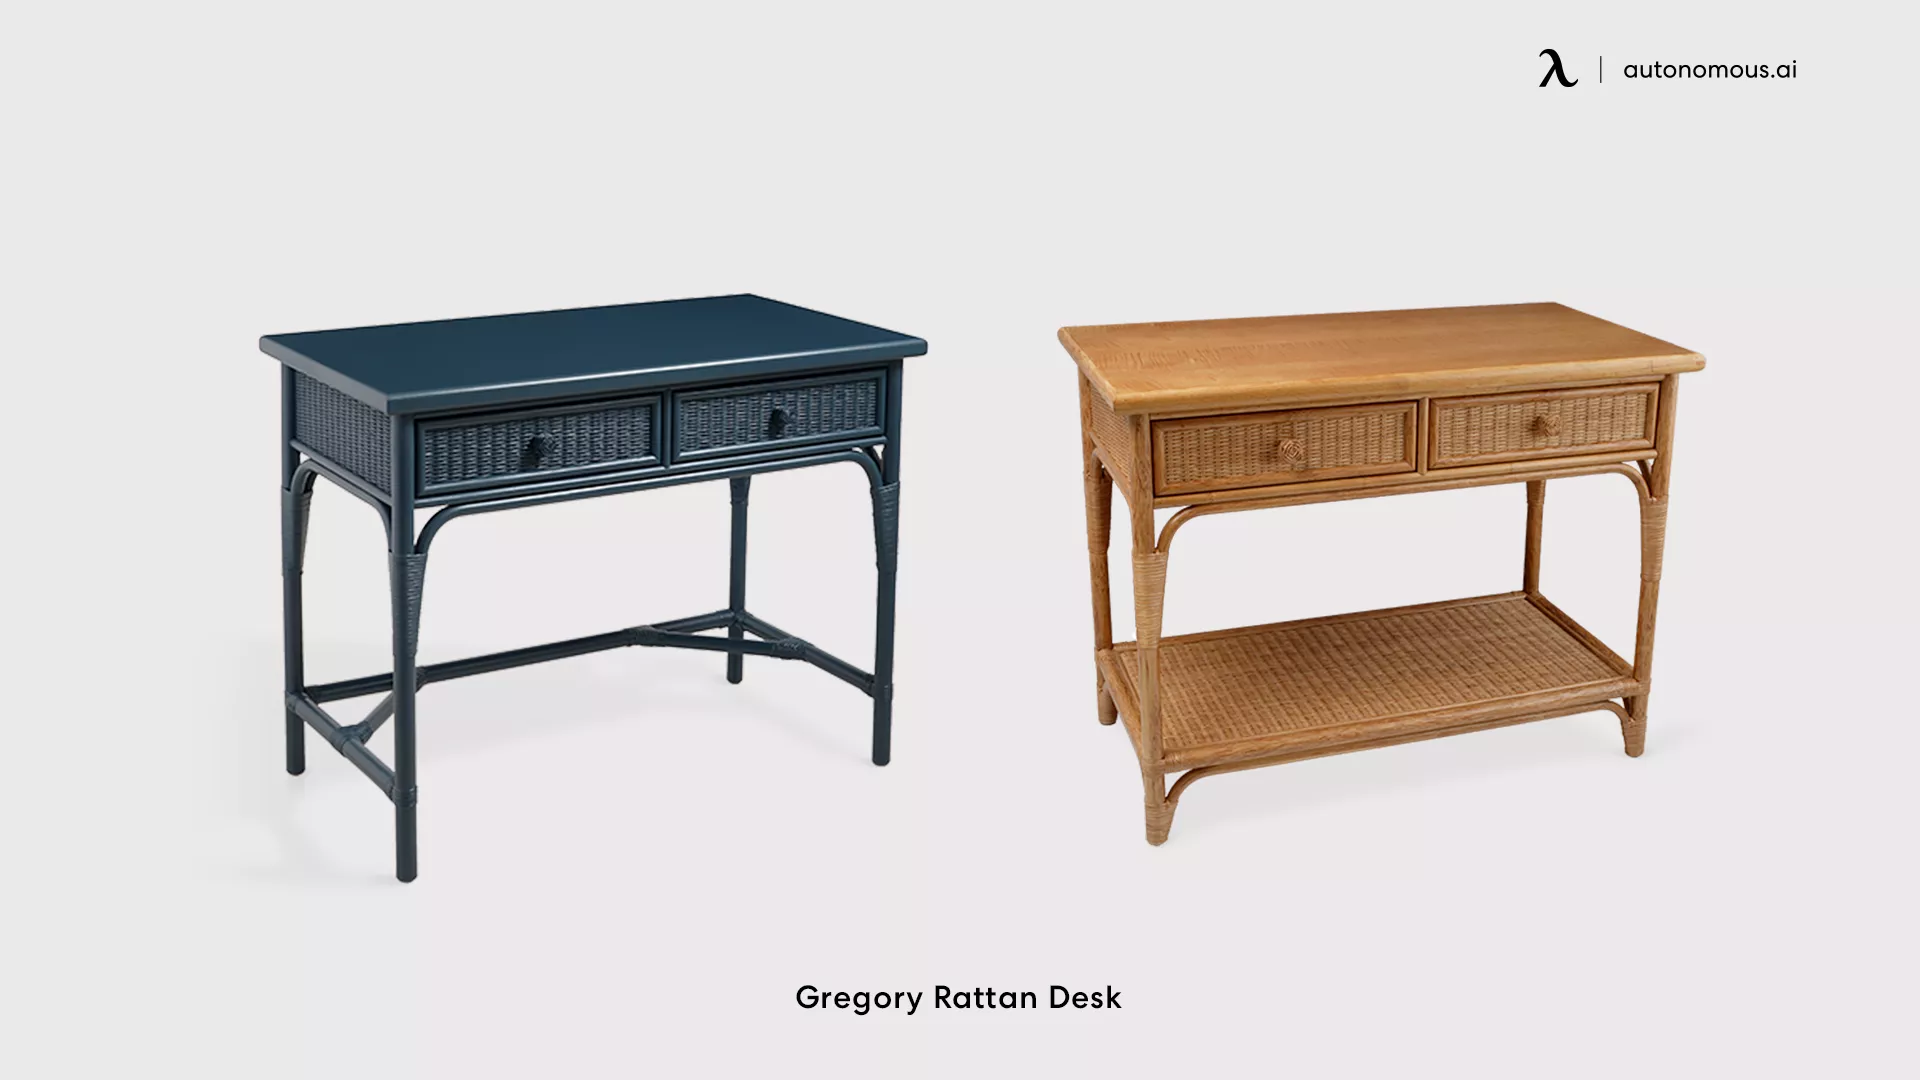 Gregory Rattan Desk by Soane Britain cool desk